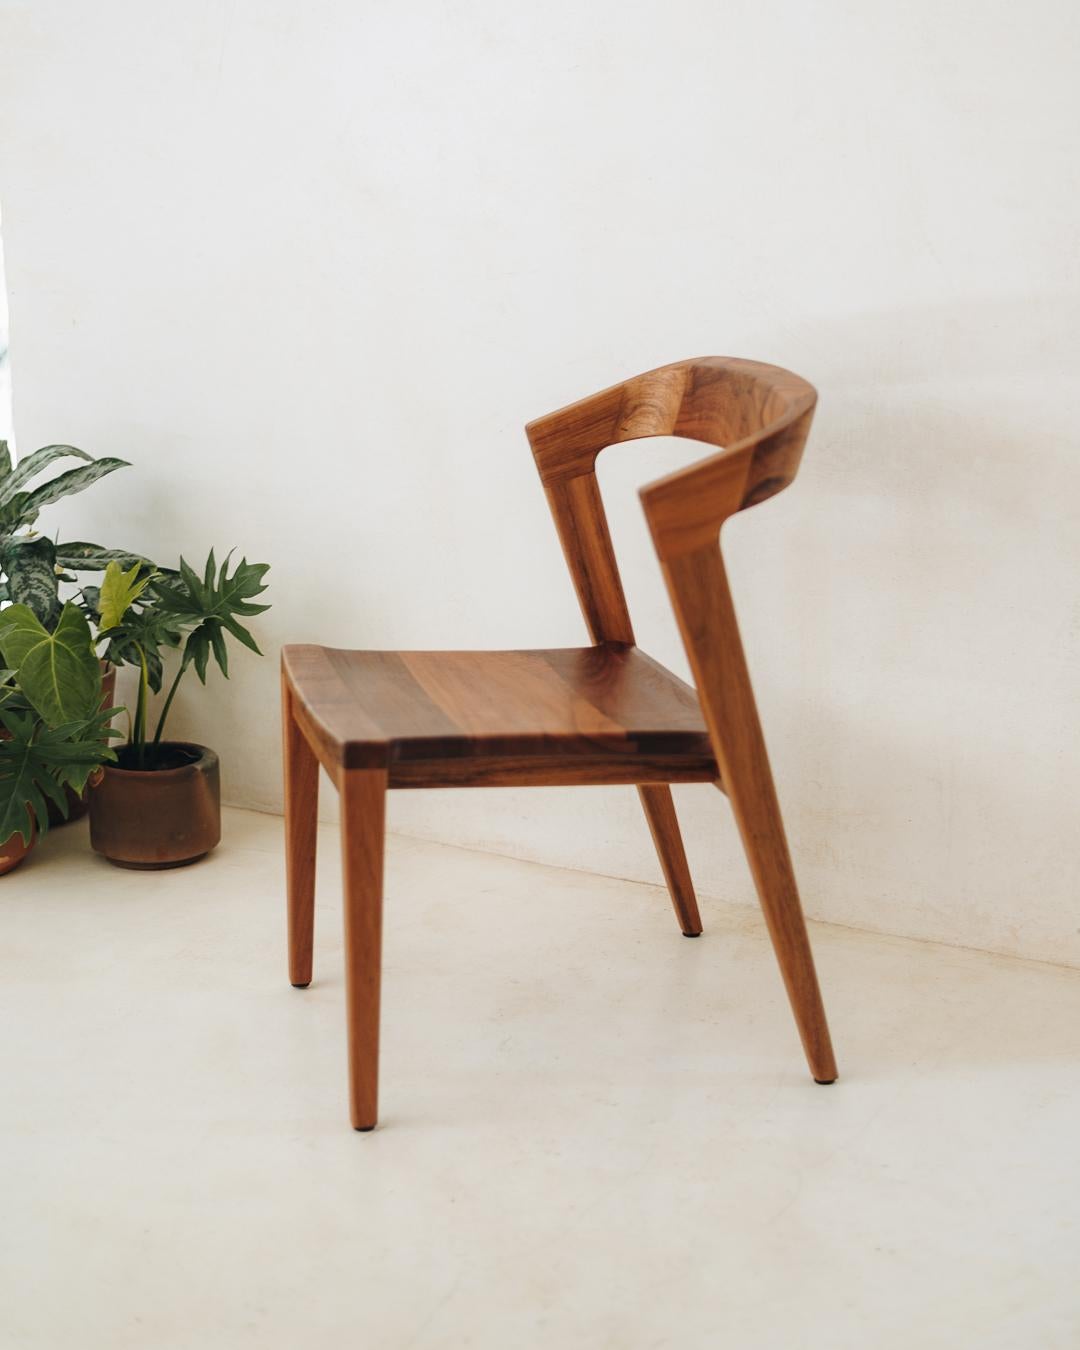 Der Tamay Chair vereint Persönlichkeit und Subtilität, basierend auf einfachen Linien und harmonischen Proportionen, die die natürliche Schönheit des massiven Tropenholzes aus dem Südosten Mexikos unterstreichen. Bei der Herstellung wurde besonderer